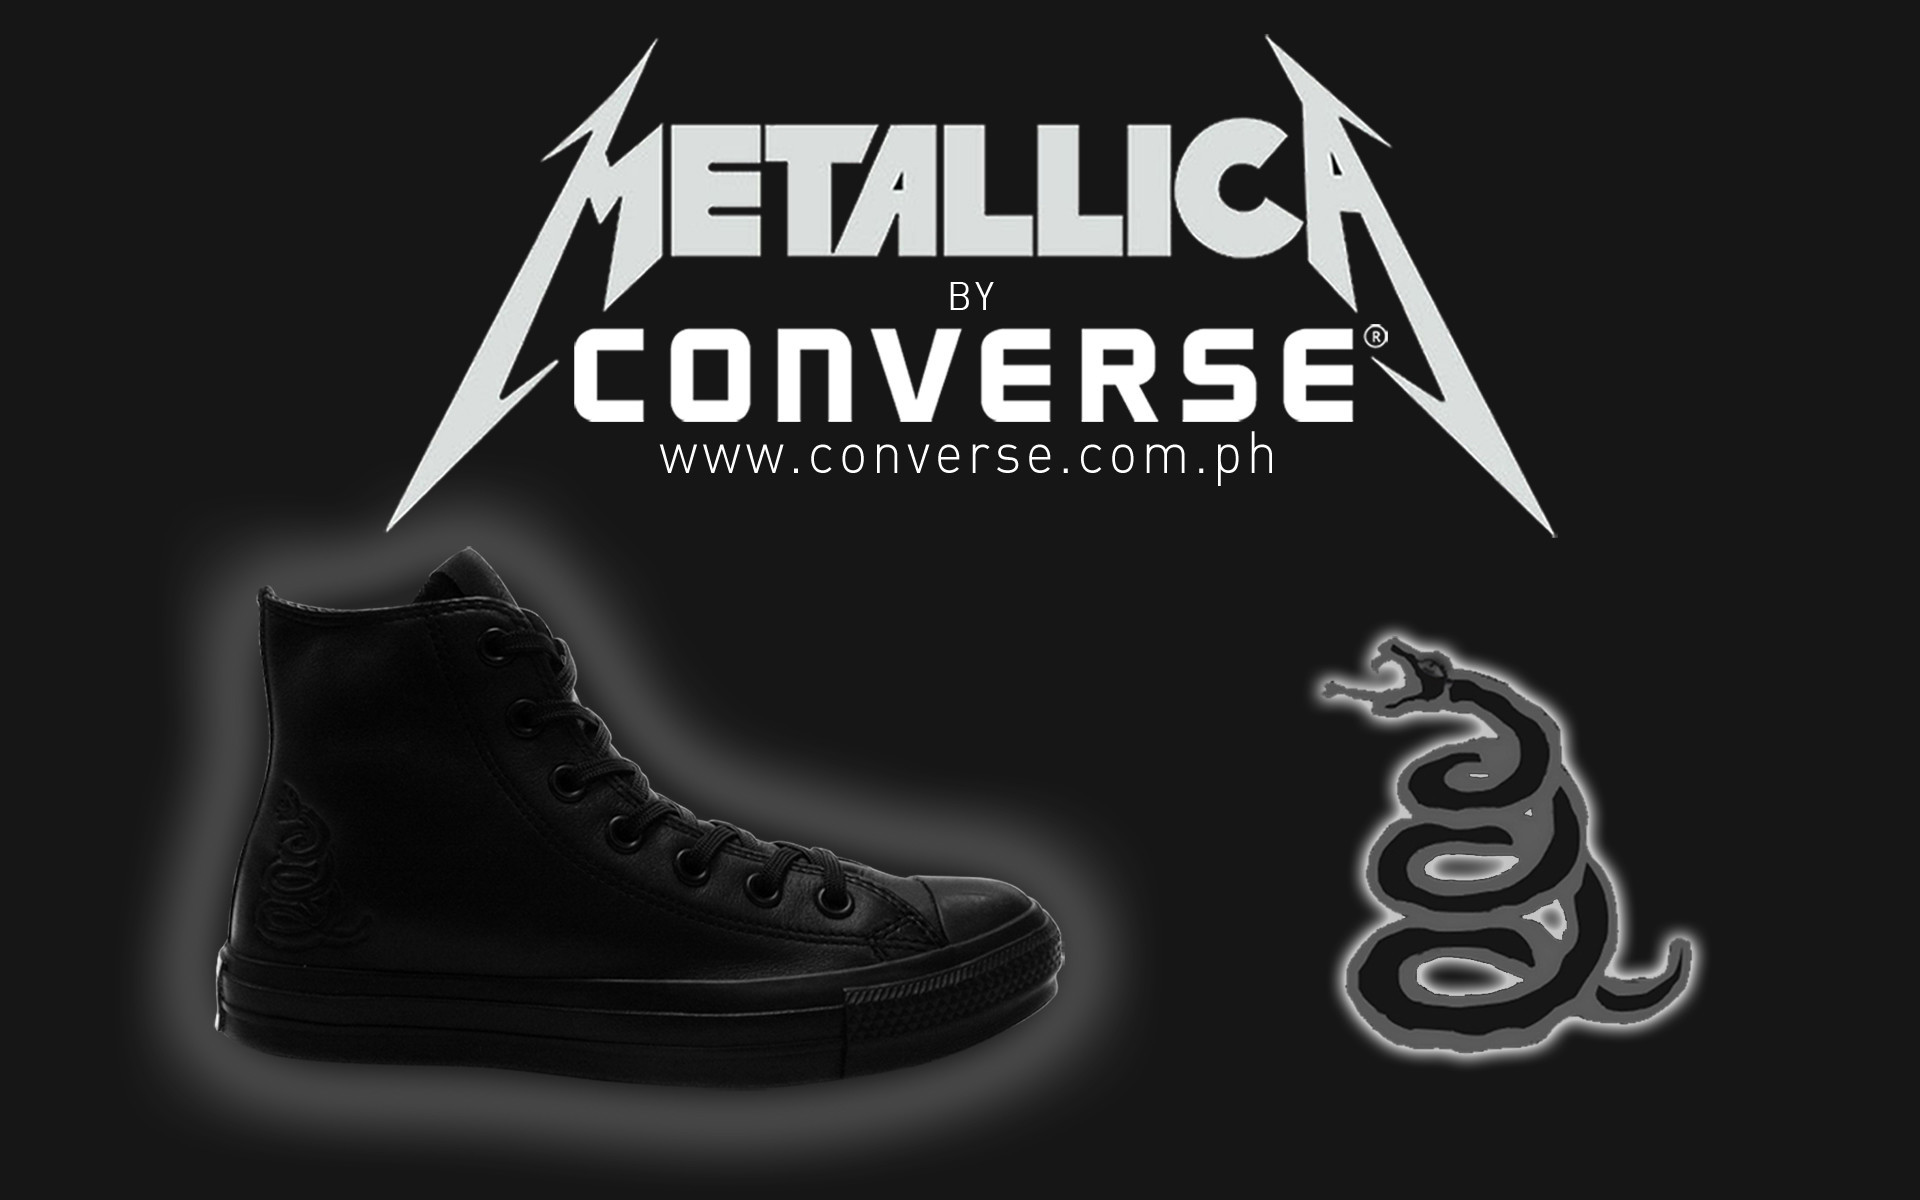 converse metallica black album